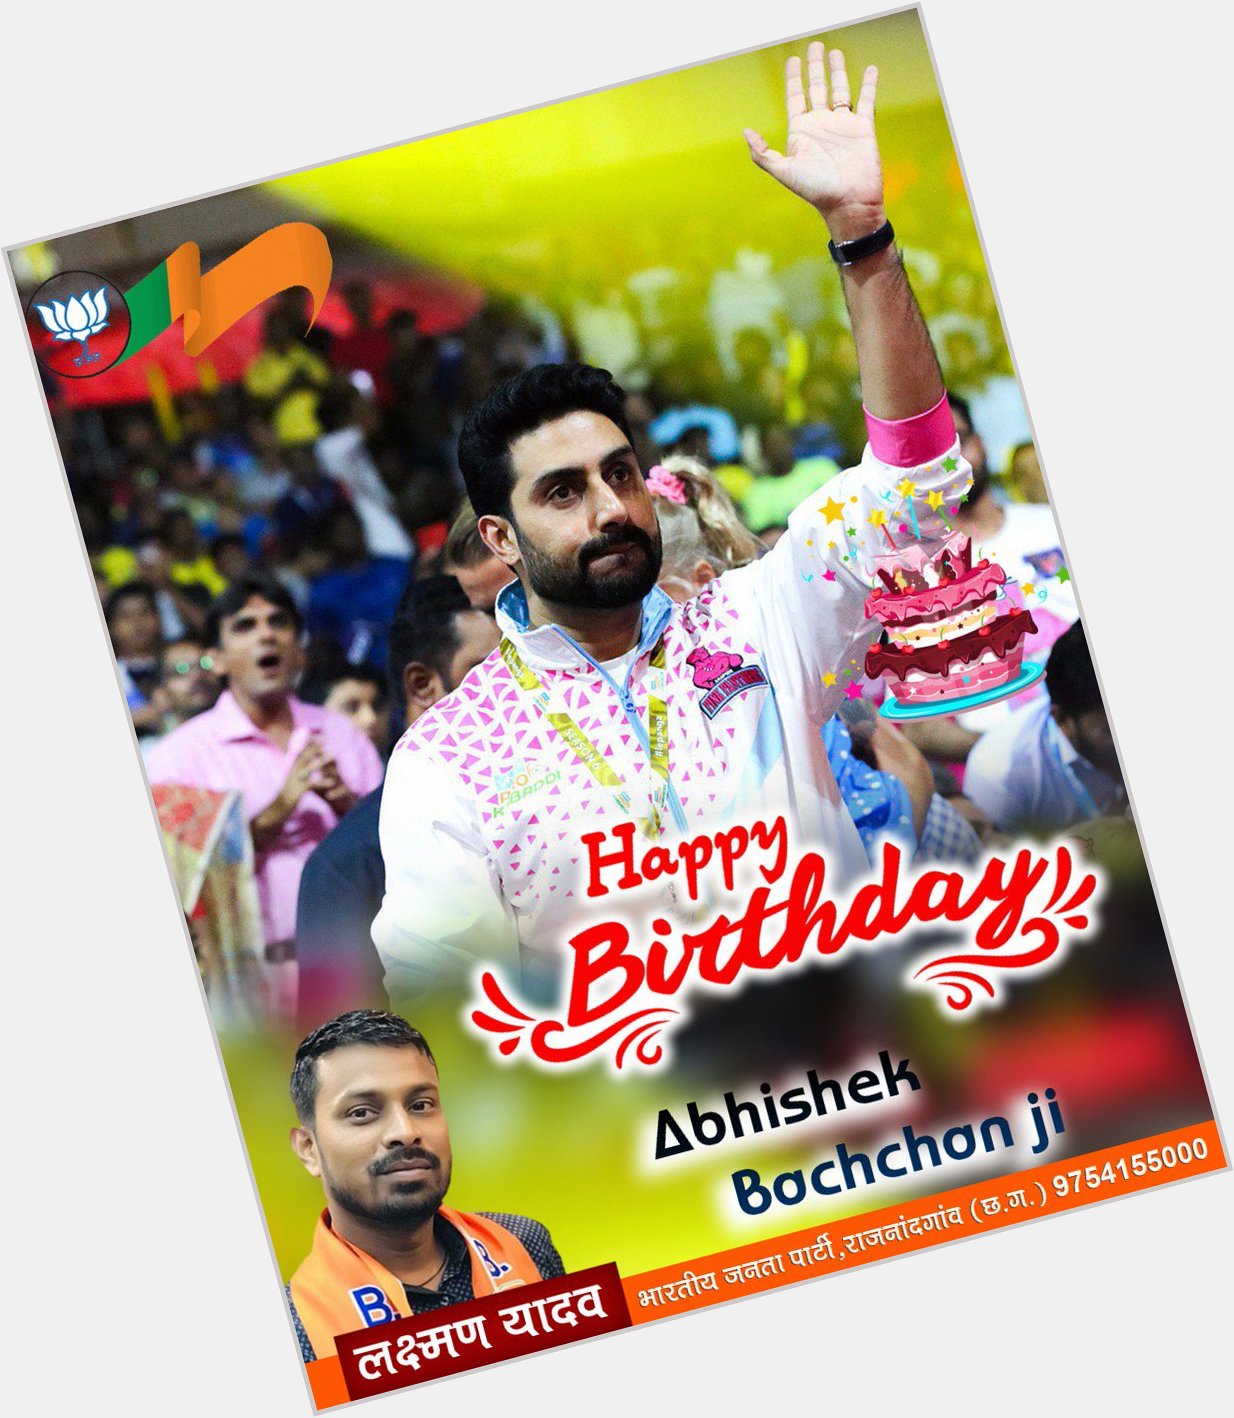  Happy birthday abhishek bachchan ji 